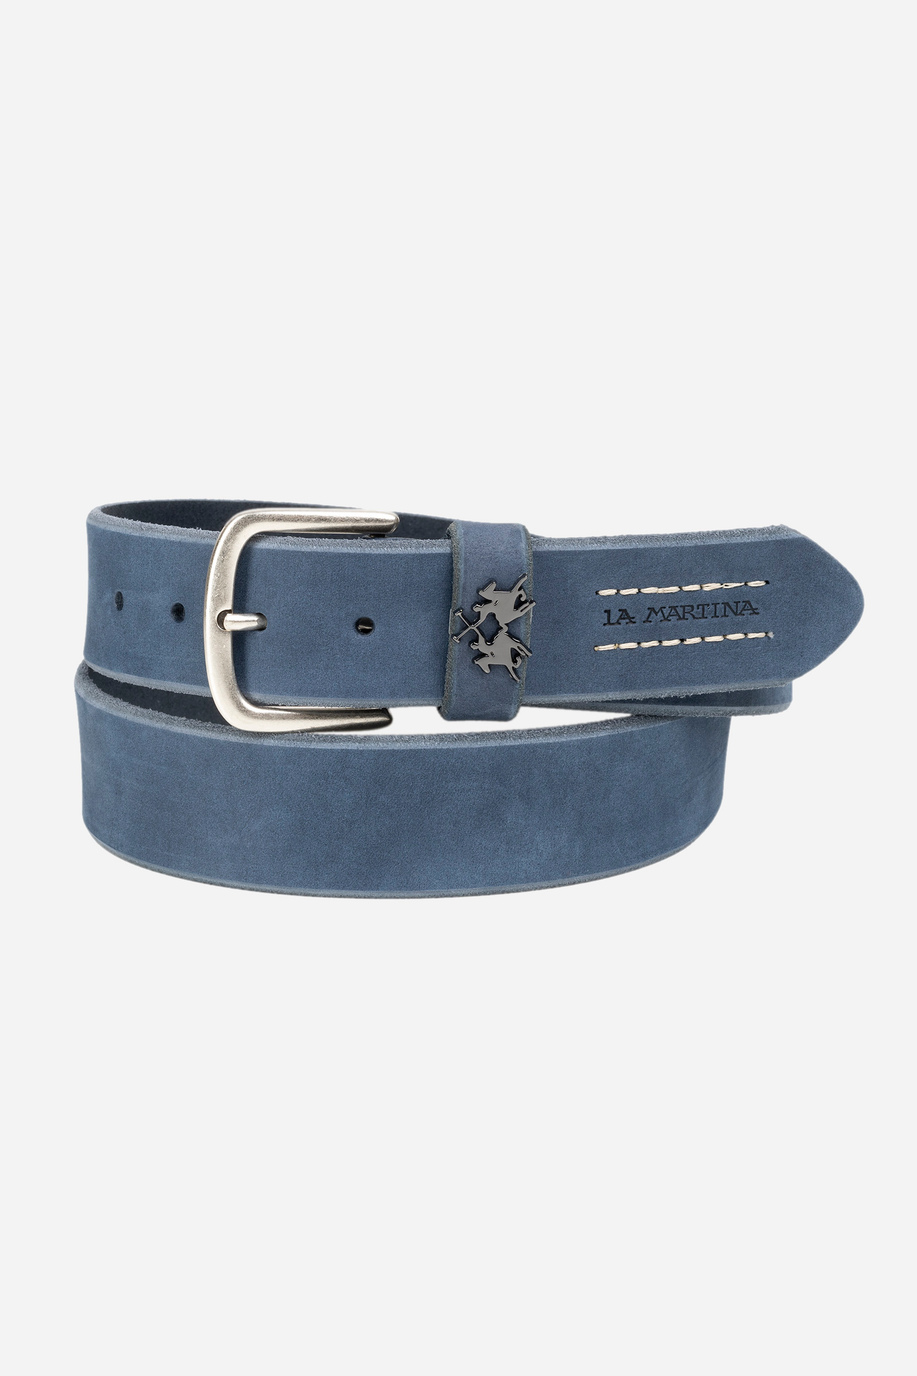 Blue navy leather belt - Belts | La Martina - Official Online Shop